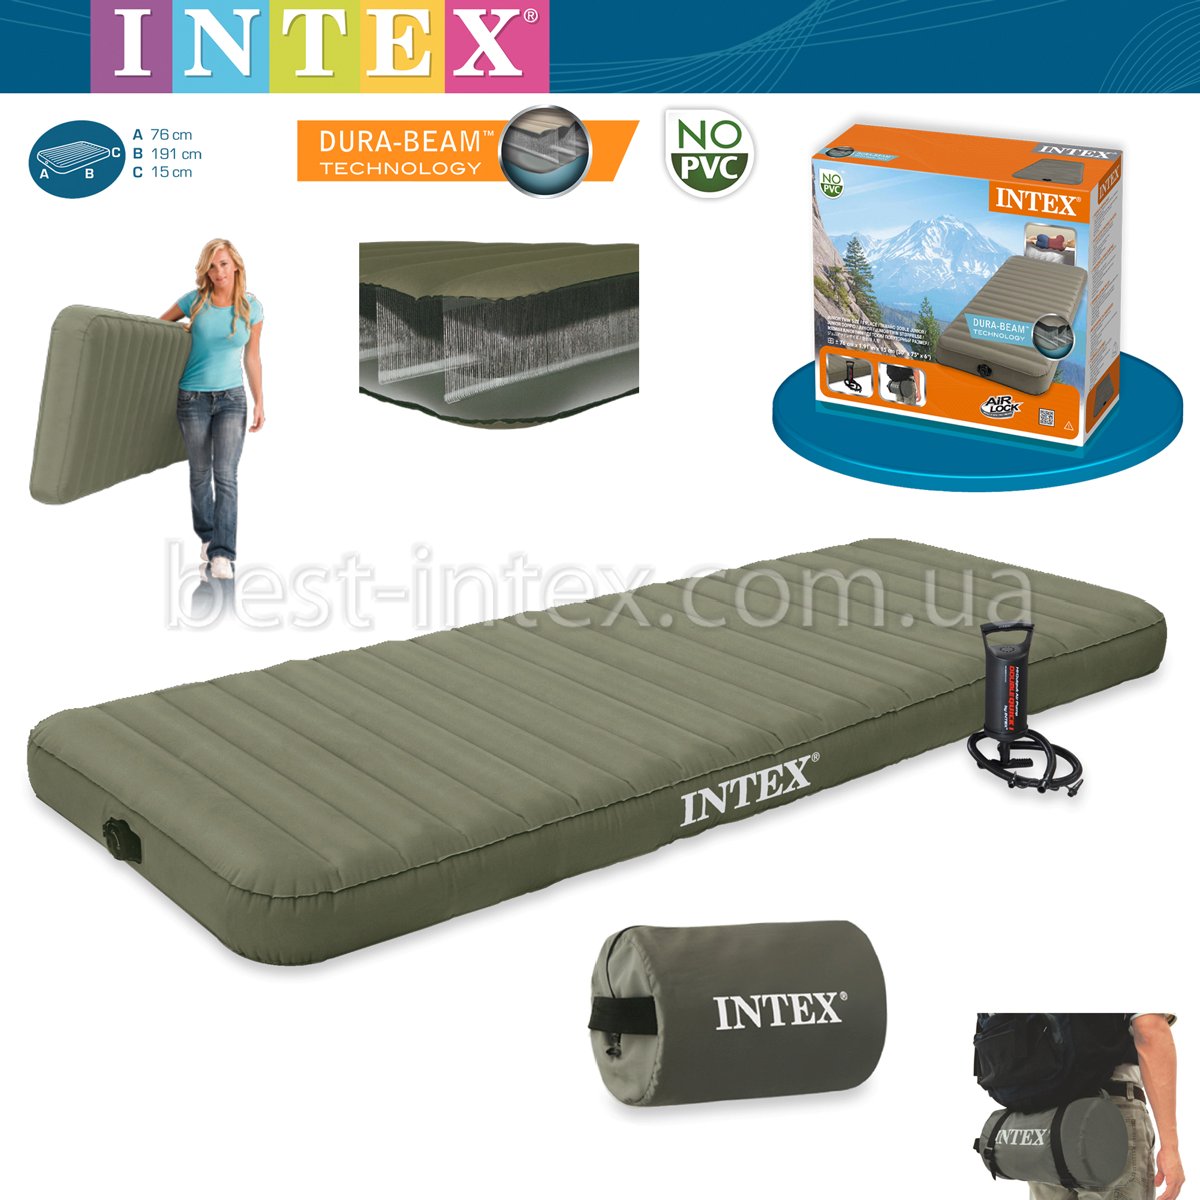 Надувной матрас Intex 68711 для активного отдыха!